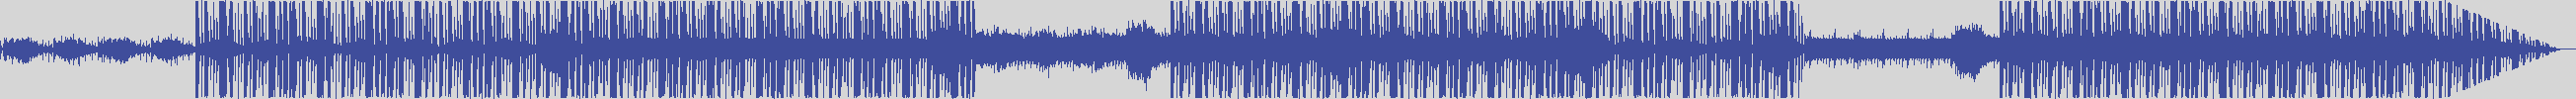 noclouds_chillout [NOC116] Redmond - Turuttuta [Original Mix] audio wave form